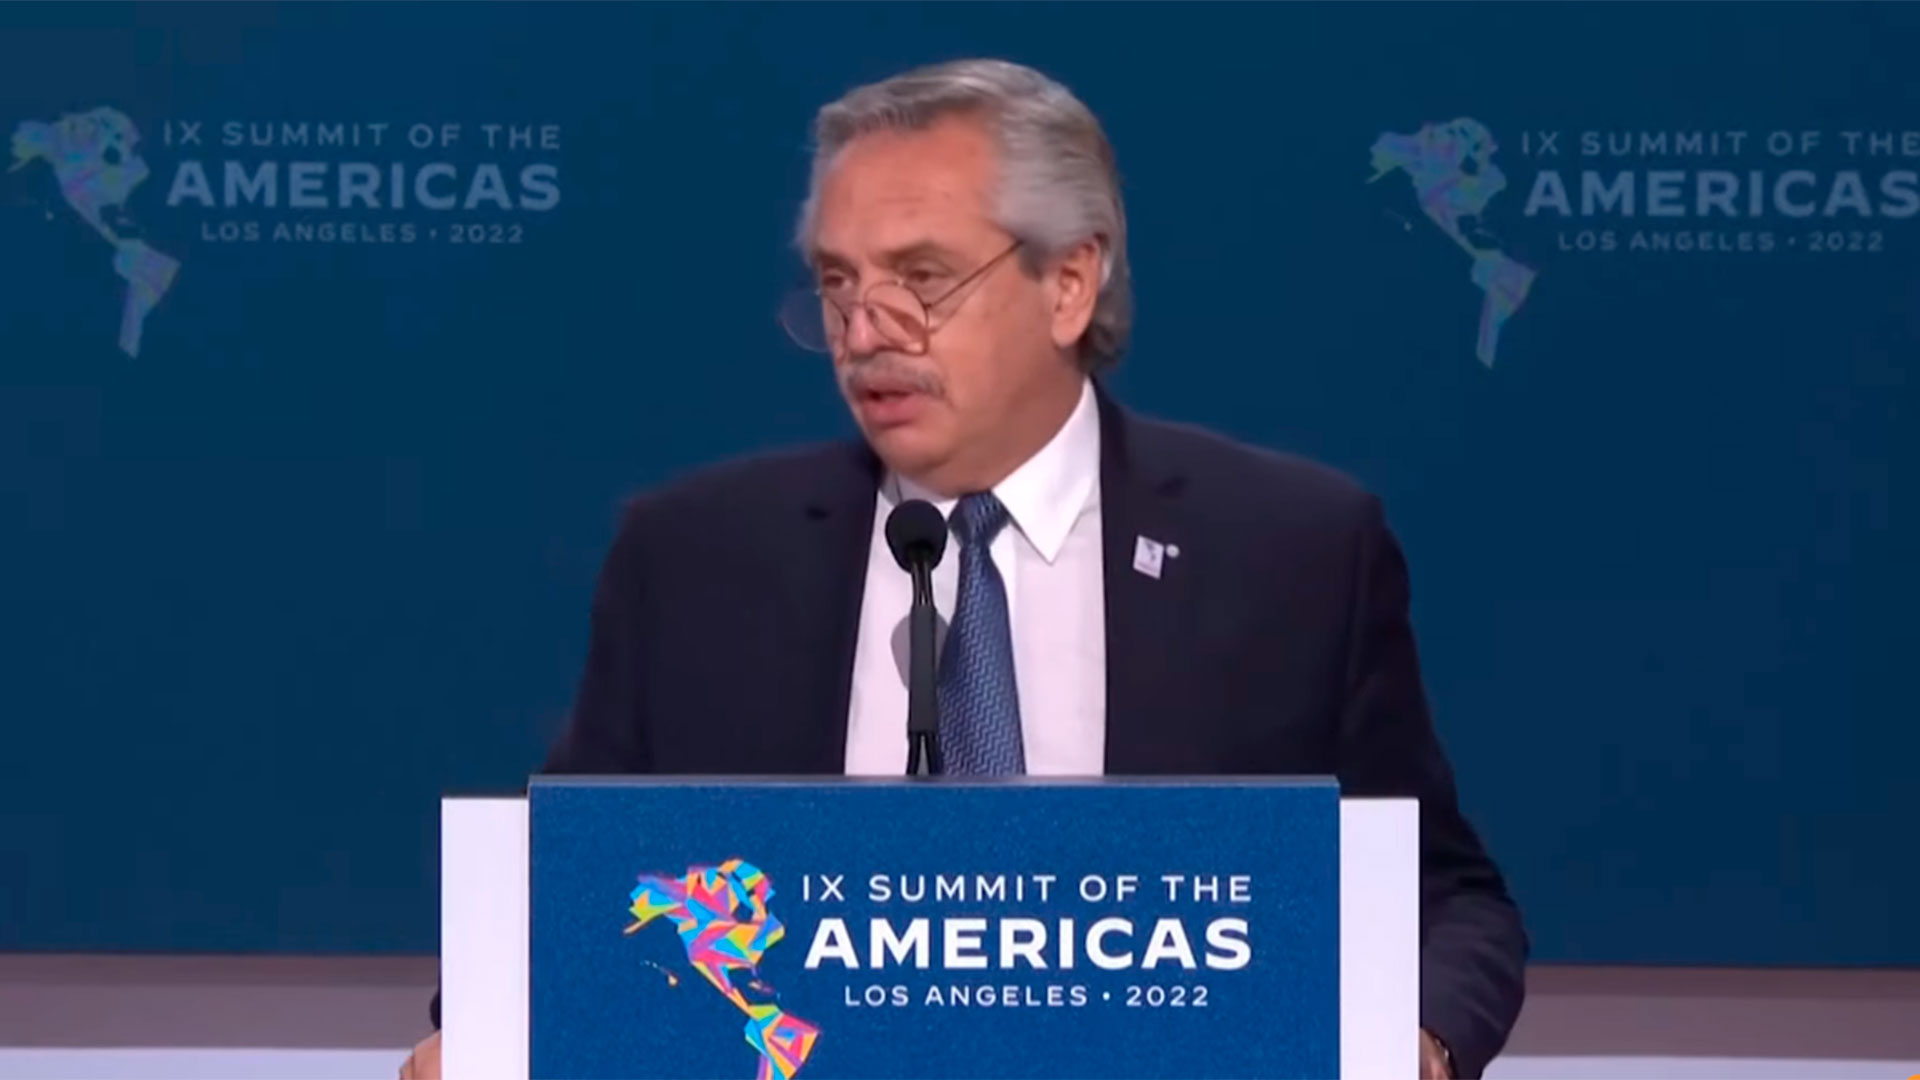 El presidente de Argentina brindó un duro discurso durante la Cumbre de las Américas al referirse a la exclusión de Cuba, Venezuela y Nicaragua